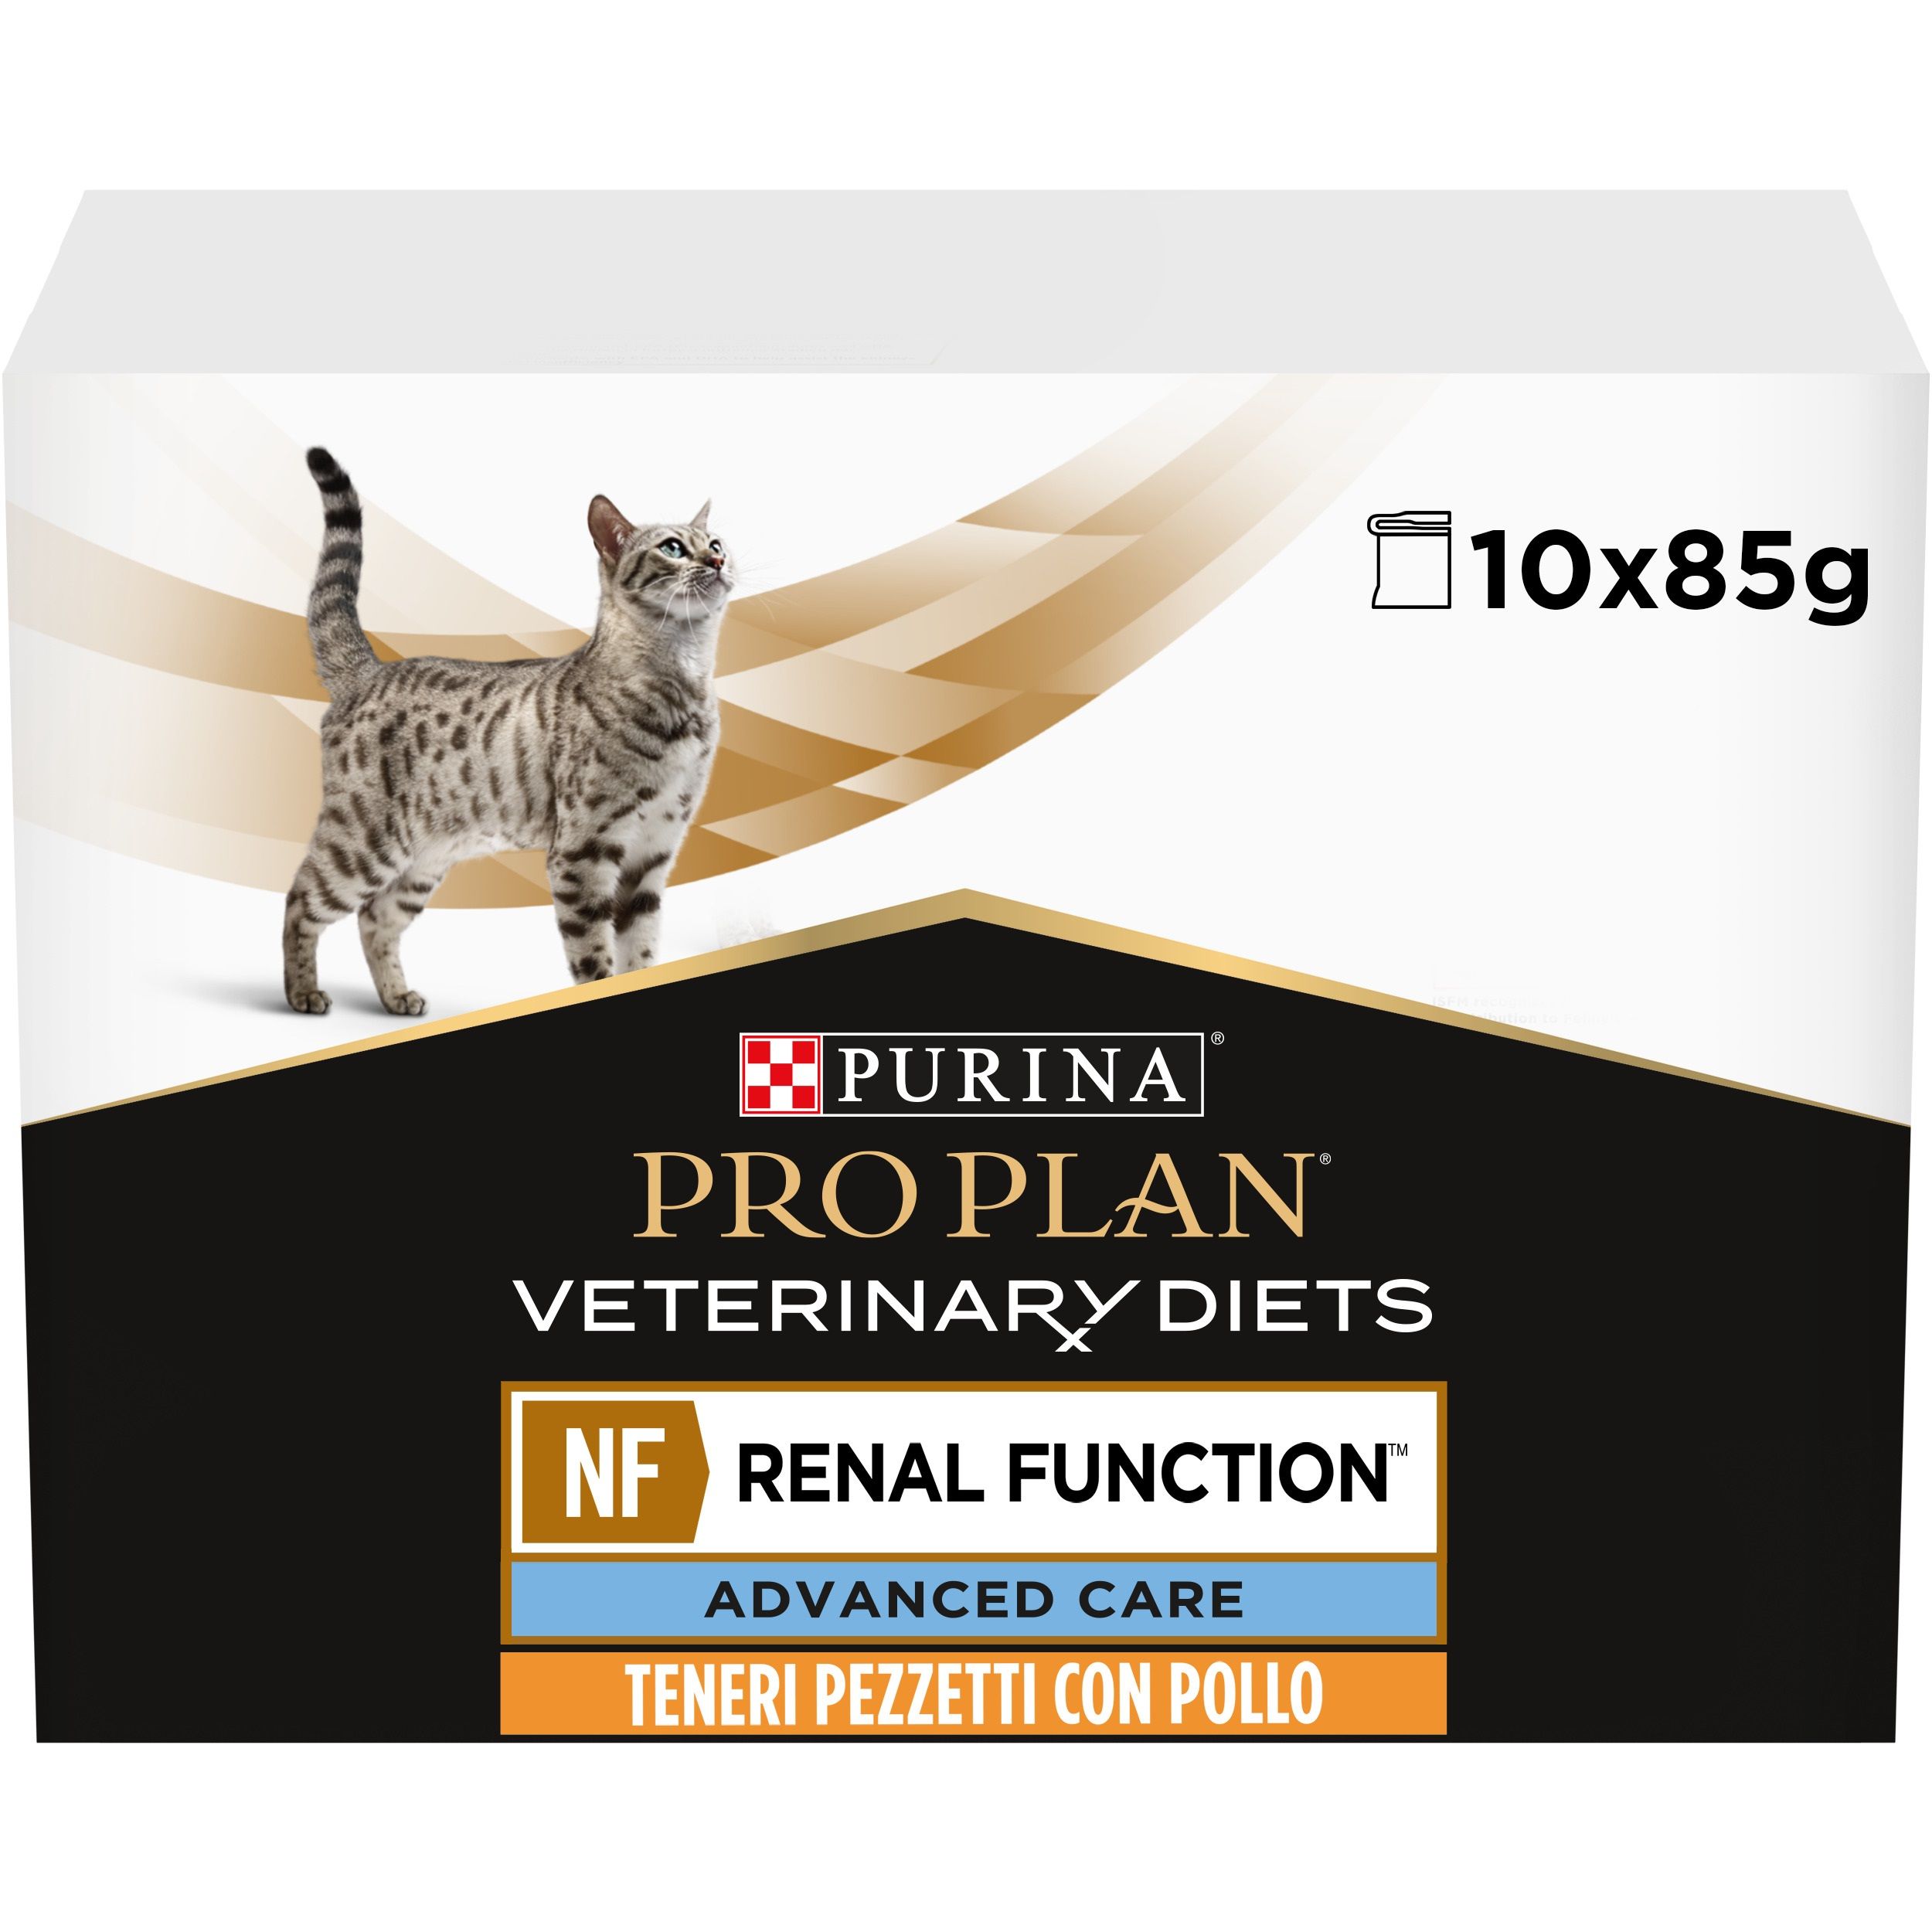 Корм pro plan renal для кошек. Pro Plan Veterinary Diets для кошек NF. Pro Plan Diabetic для кошек. Pro Plan early renal для кошек. Purina Pro Plan renal function для кошек.